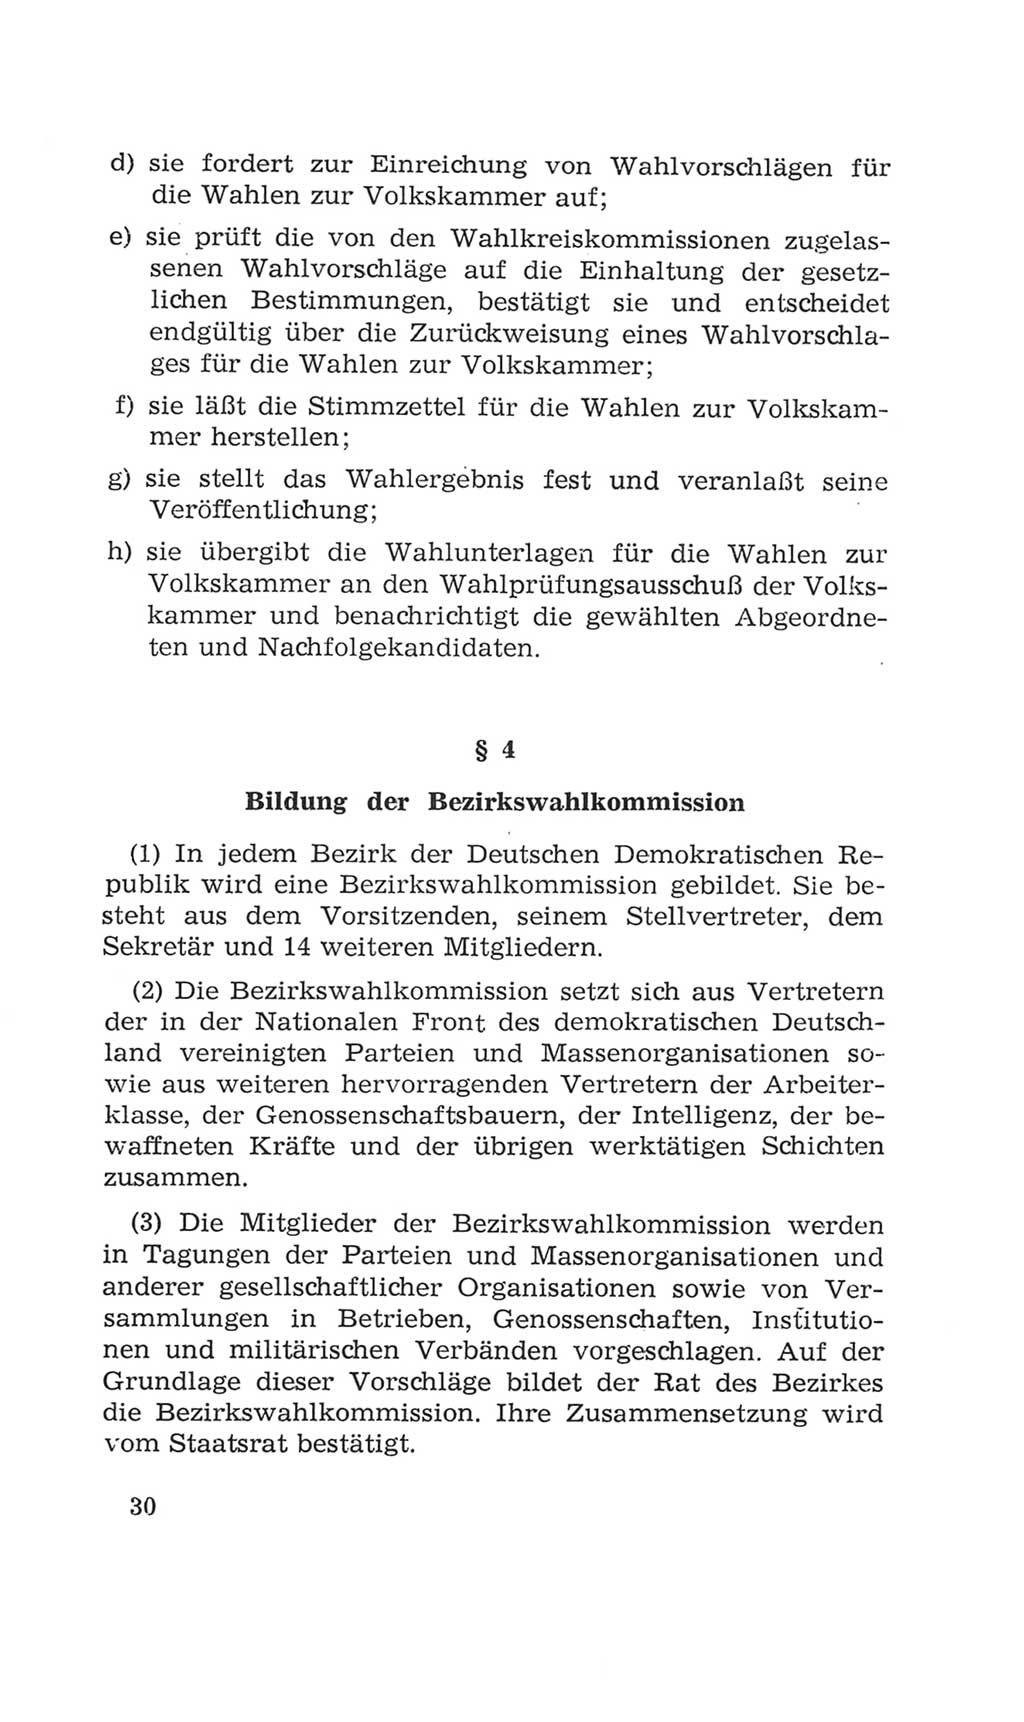 Volkskammer (VK) der Deutschen Demokratischen Republik (DDR), 4. Wahlperiode 1963-1967, Seite 30 (VK. DDR 4. WP. 1963-1967, S. 30)